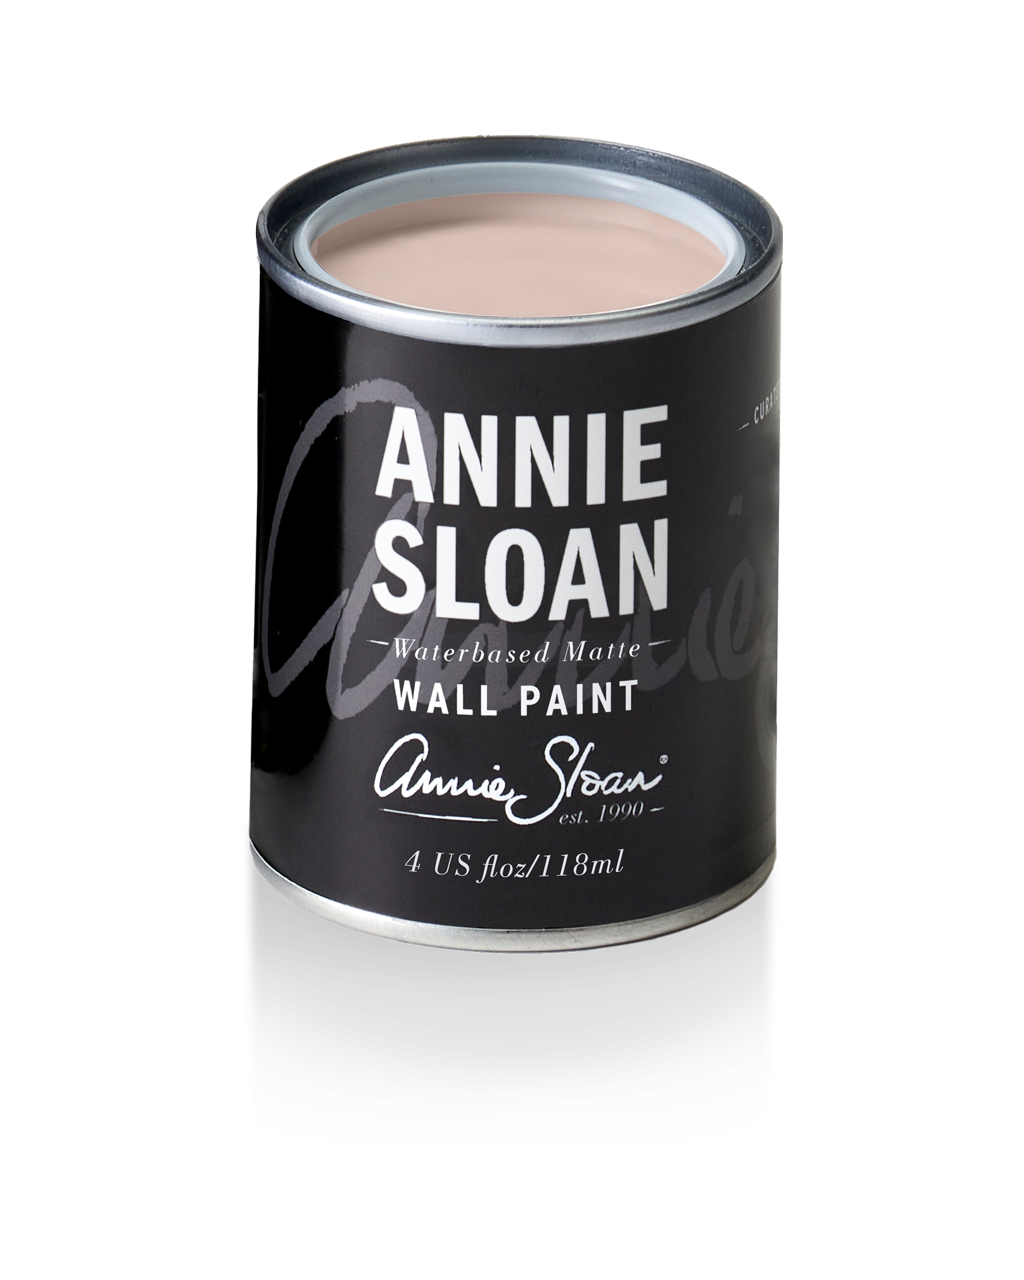 Annie Sloan Wall Paint Tin Pointe Silk